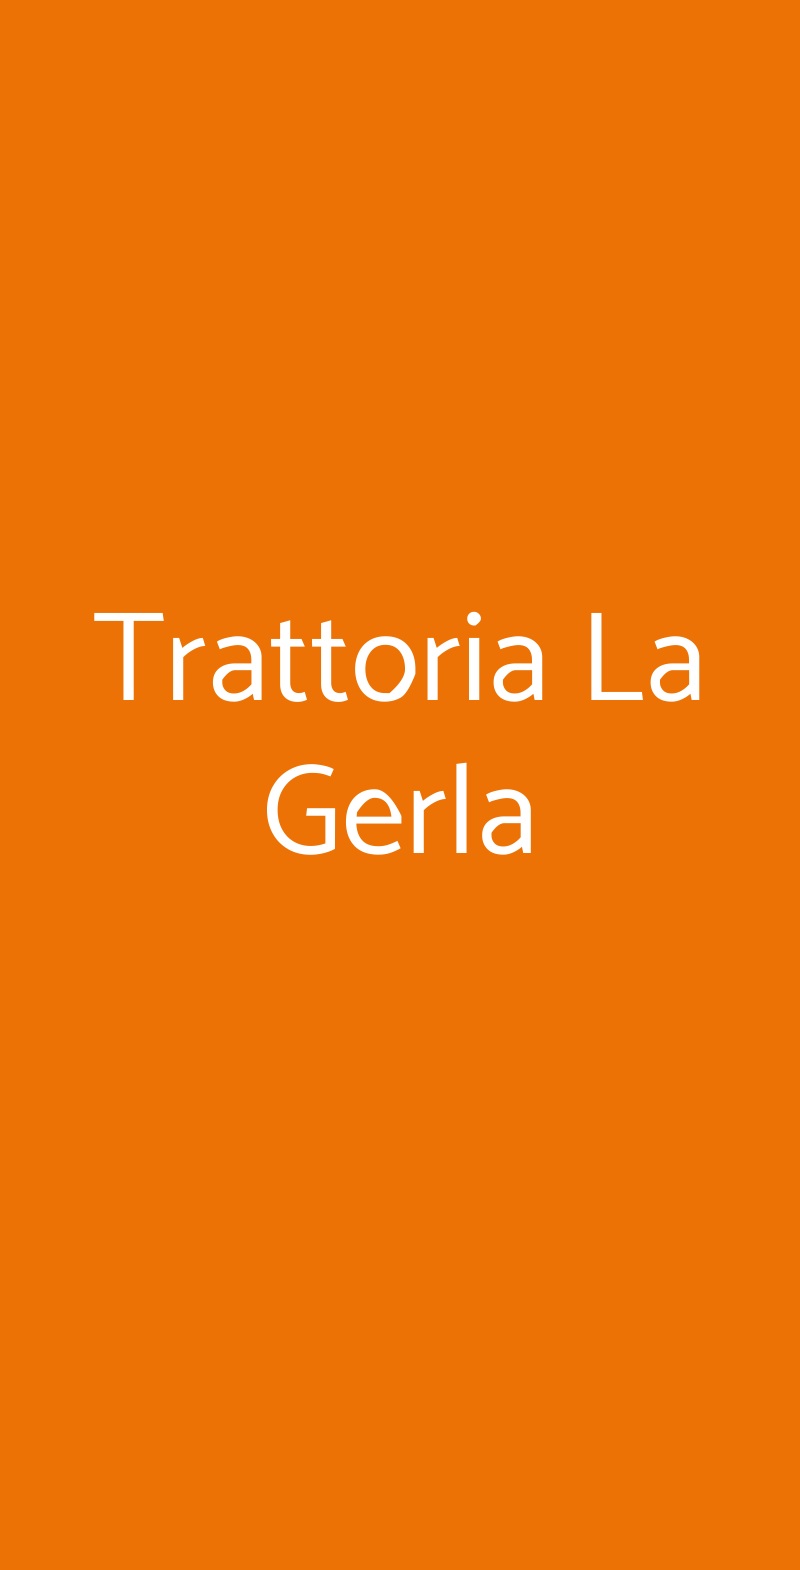 Trattoria La Gerla Milano menù 1 pagina